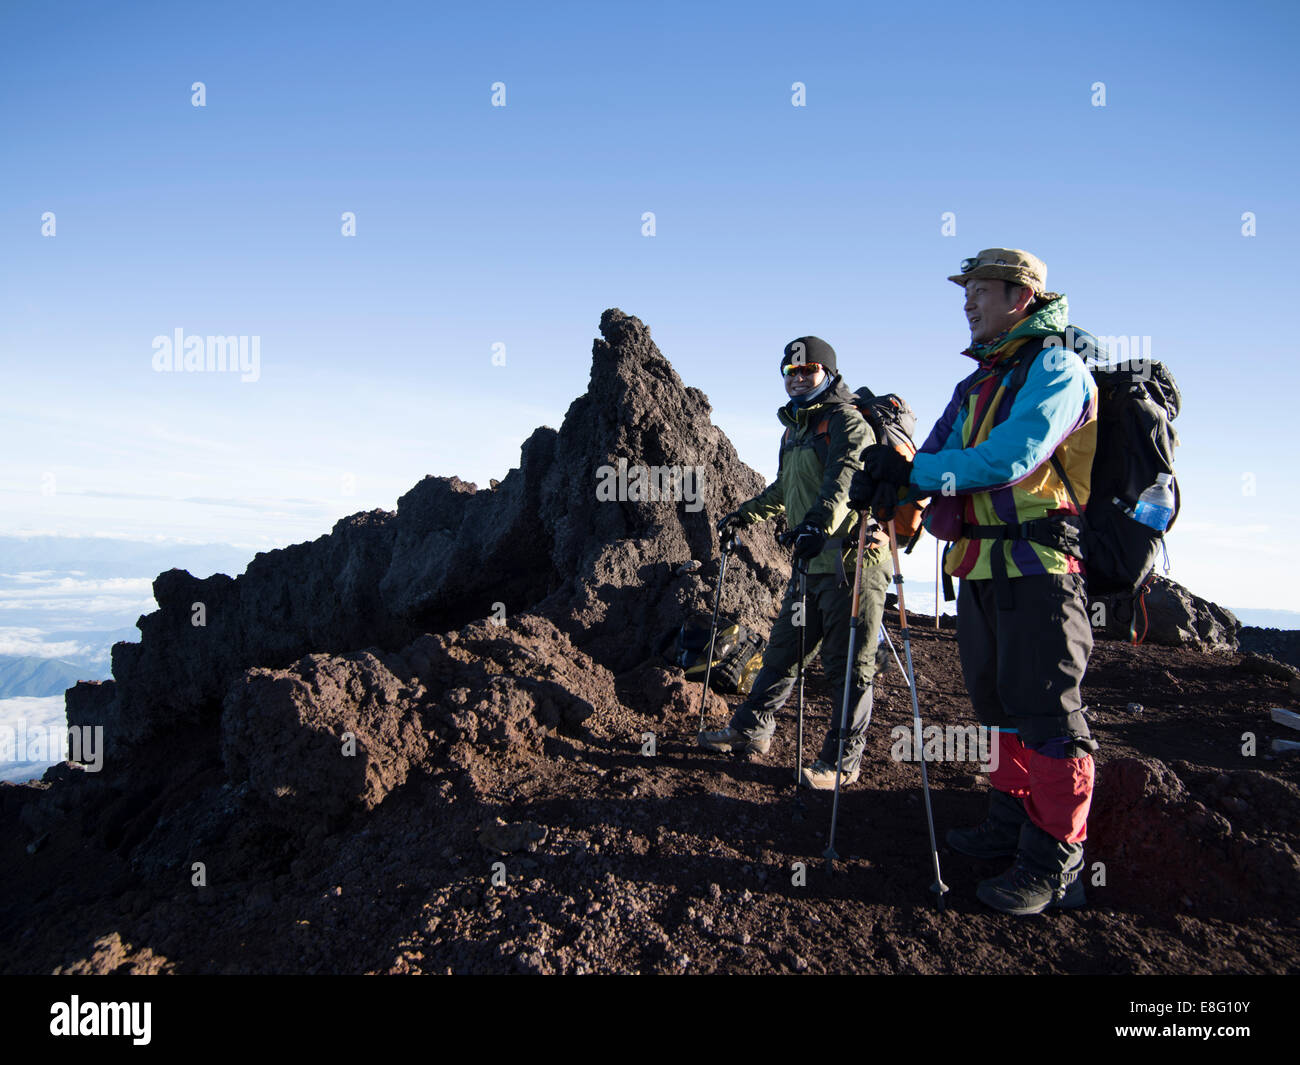 Subir Mt. Fuji, Japón - japonés excursionistas en la cumbre al amanecer Foto de stock